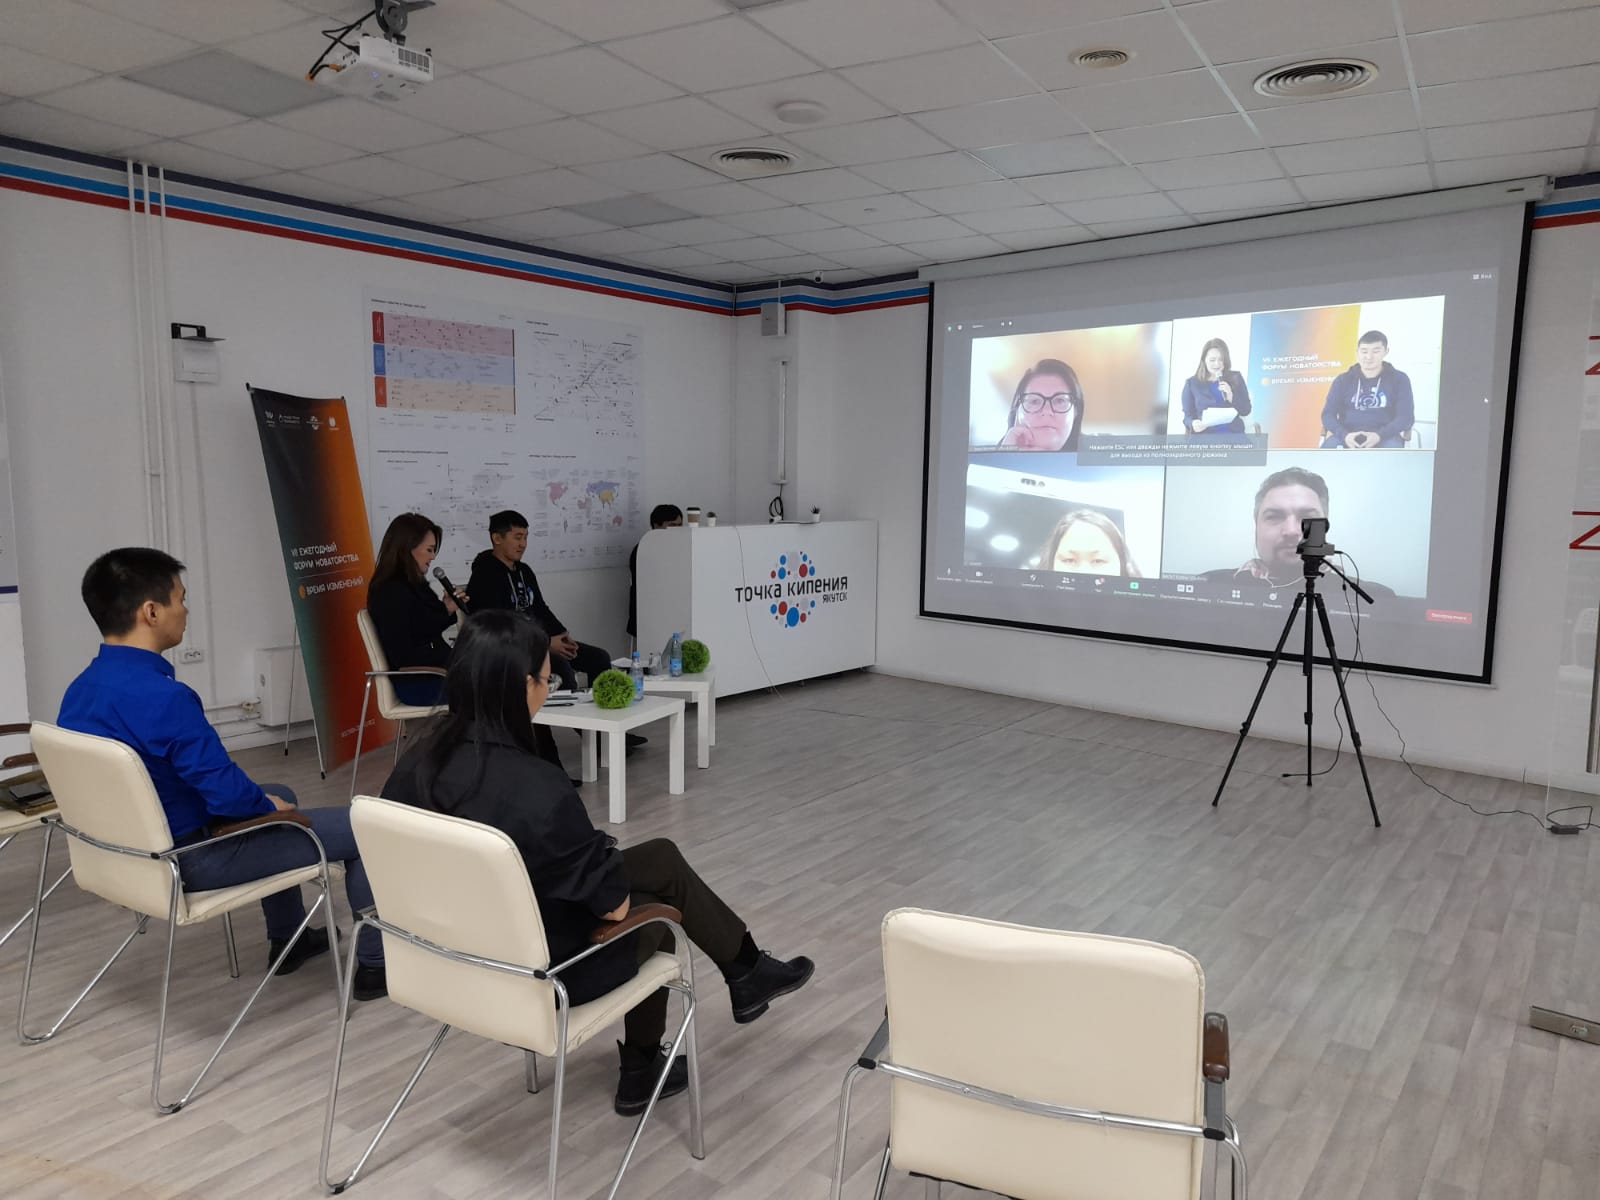 Возможности и перспективы людей в условиях новой реальности обсудили на форуме в Якутске